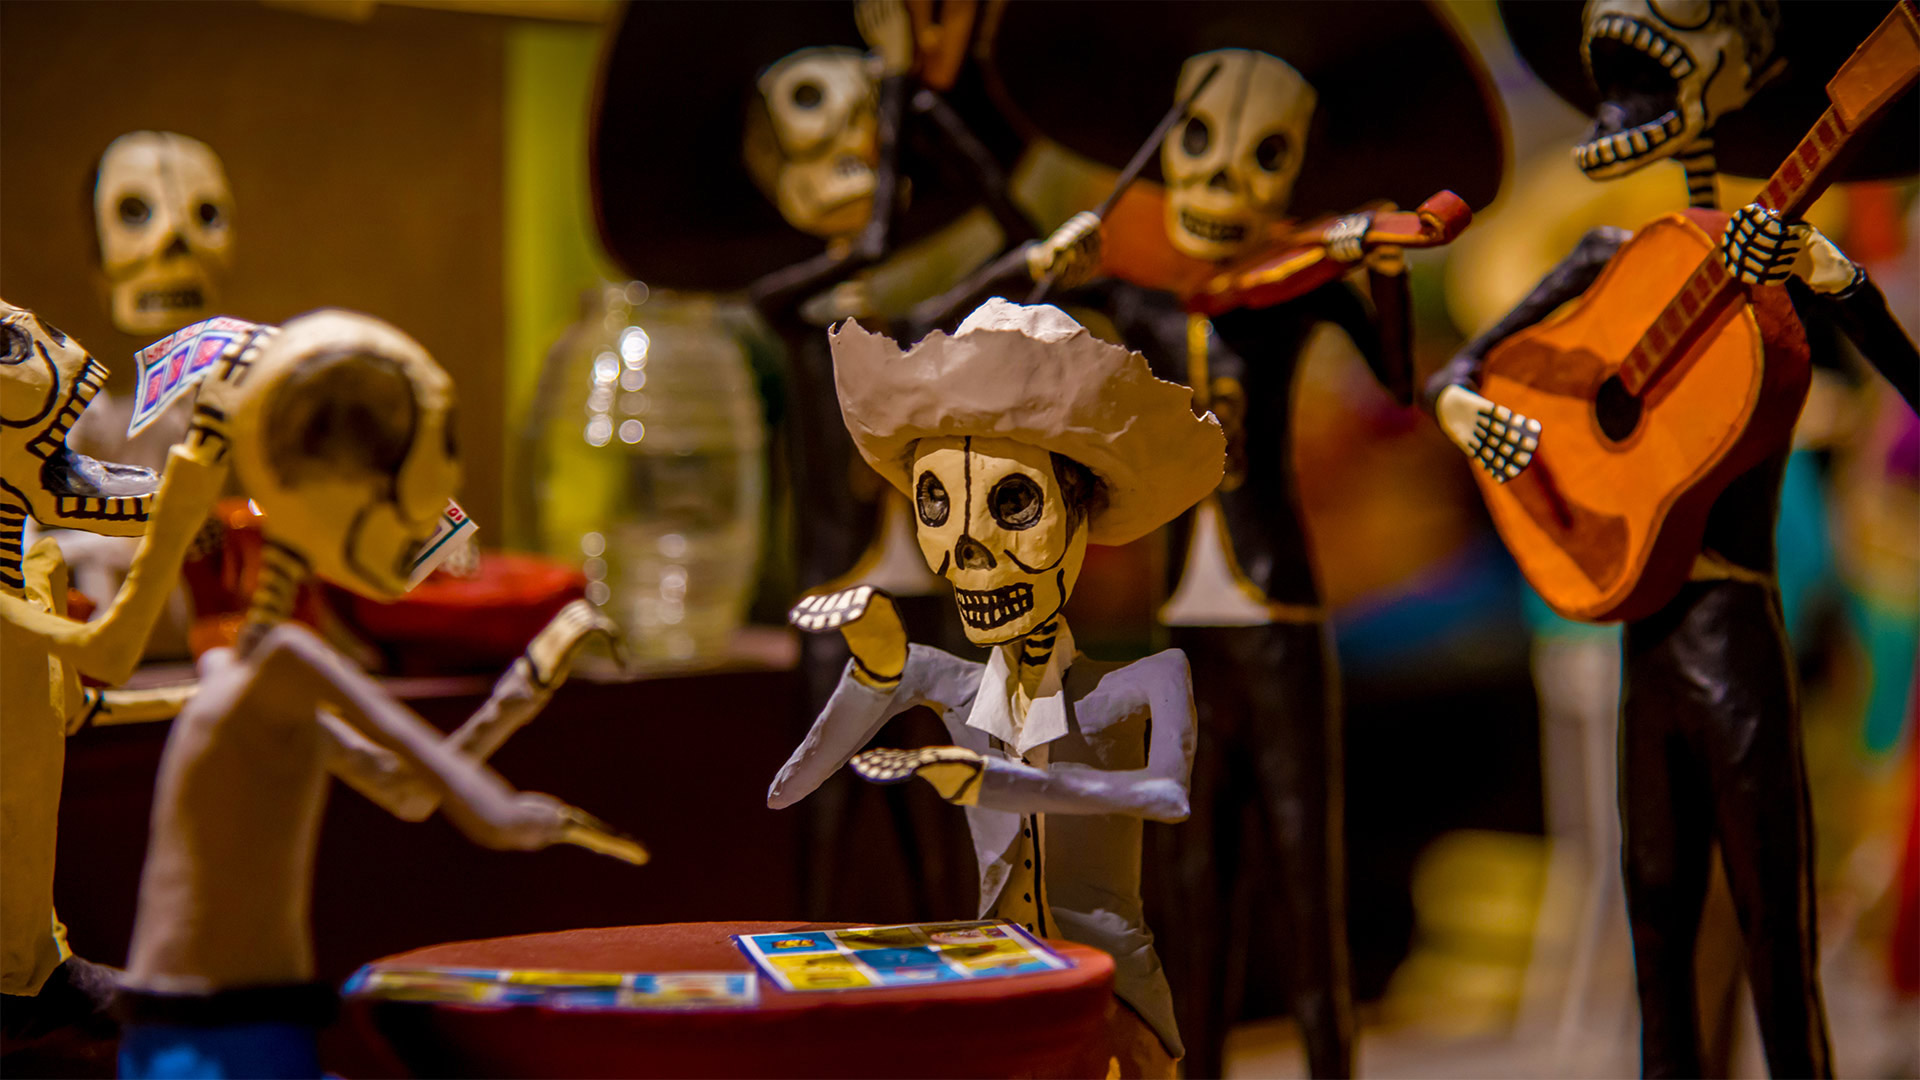 Skeleton figures (calacas) dressed up for Día de los Muertos celebrations in Mexico - Amelia Fuentes Marin/Getty Images)